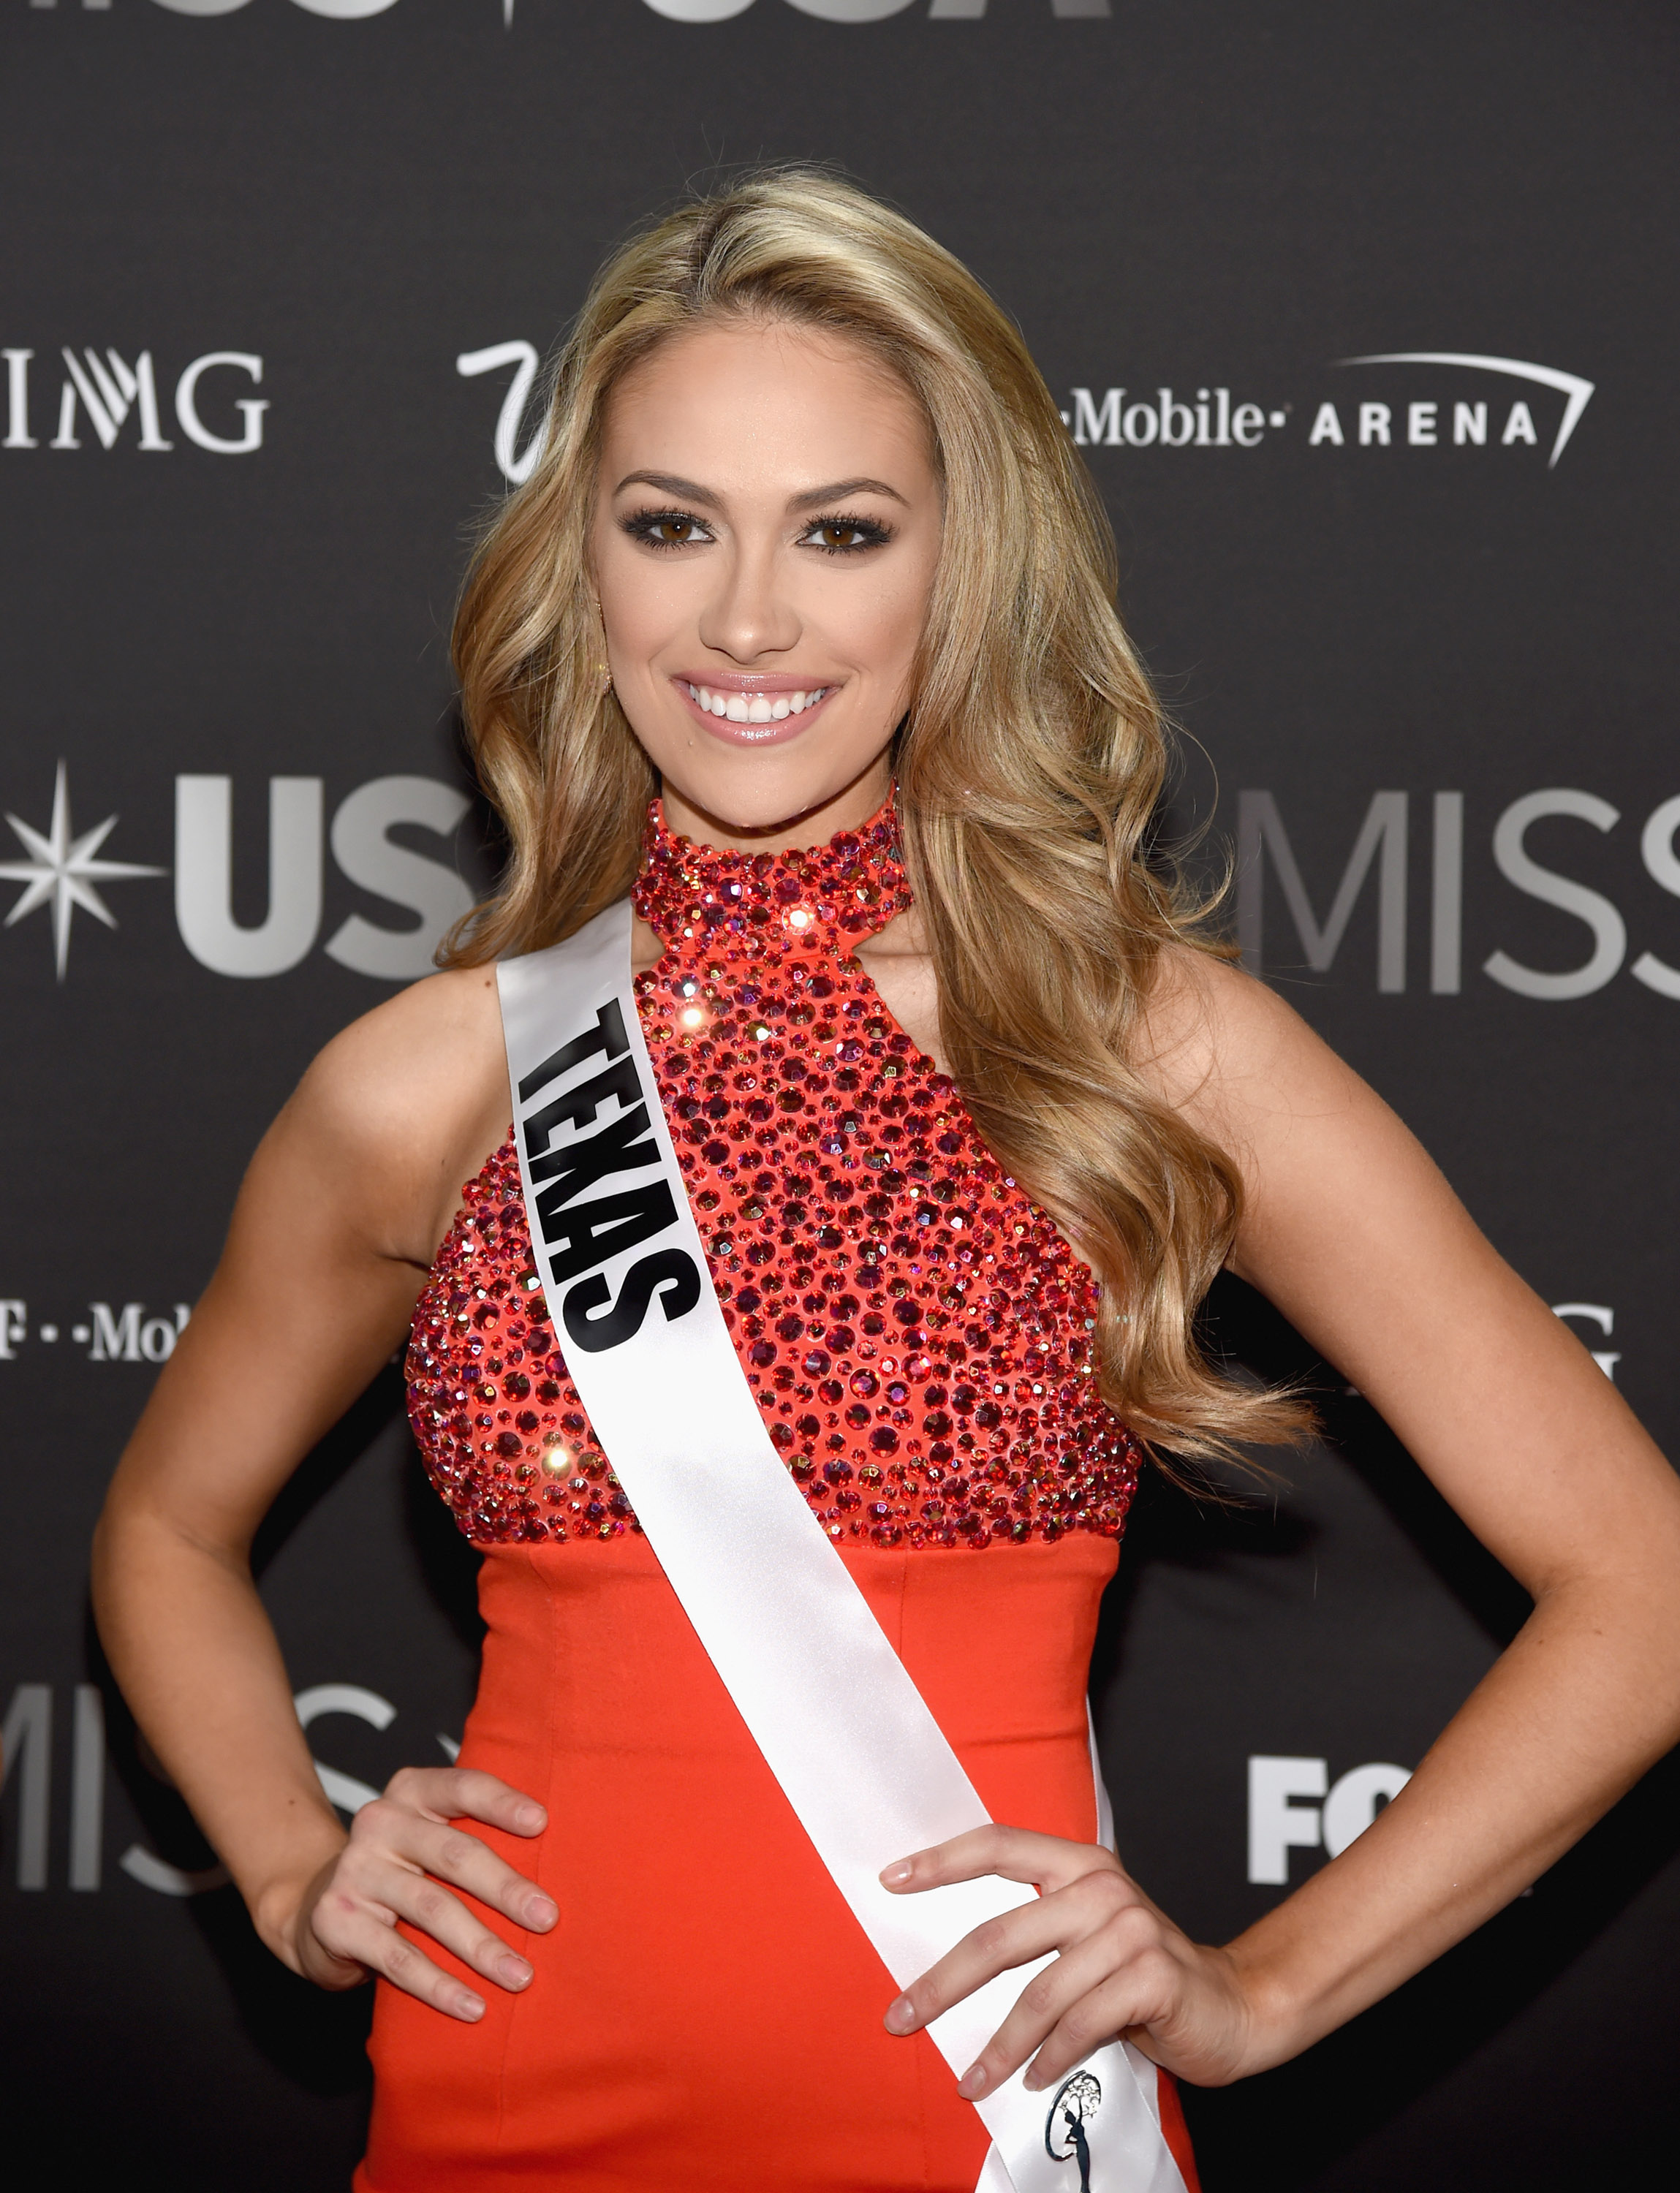 Cancelamento do Miss Brazil USA 2016 em Las Vegas causa polêmica